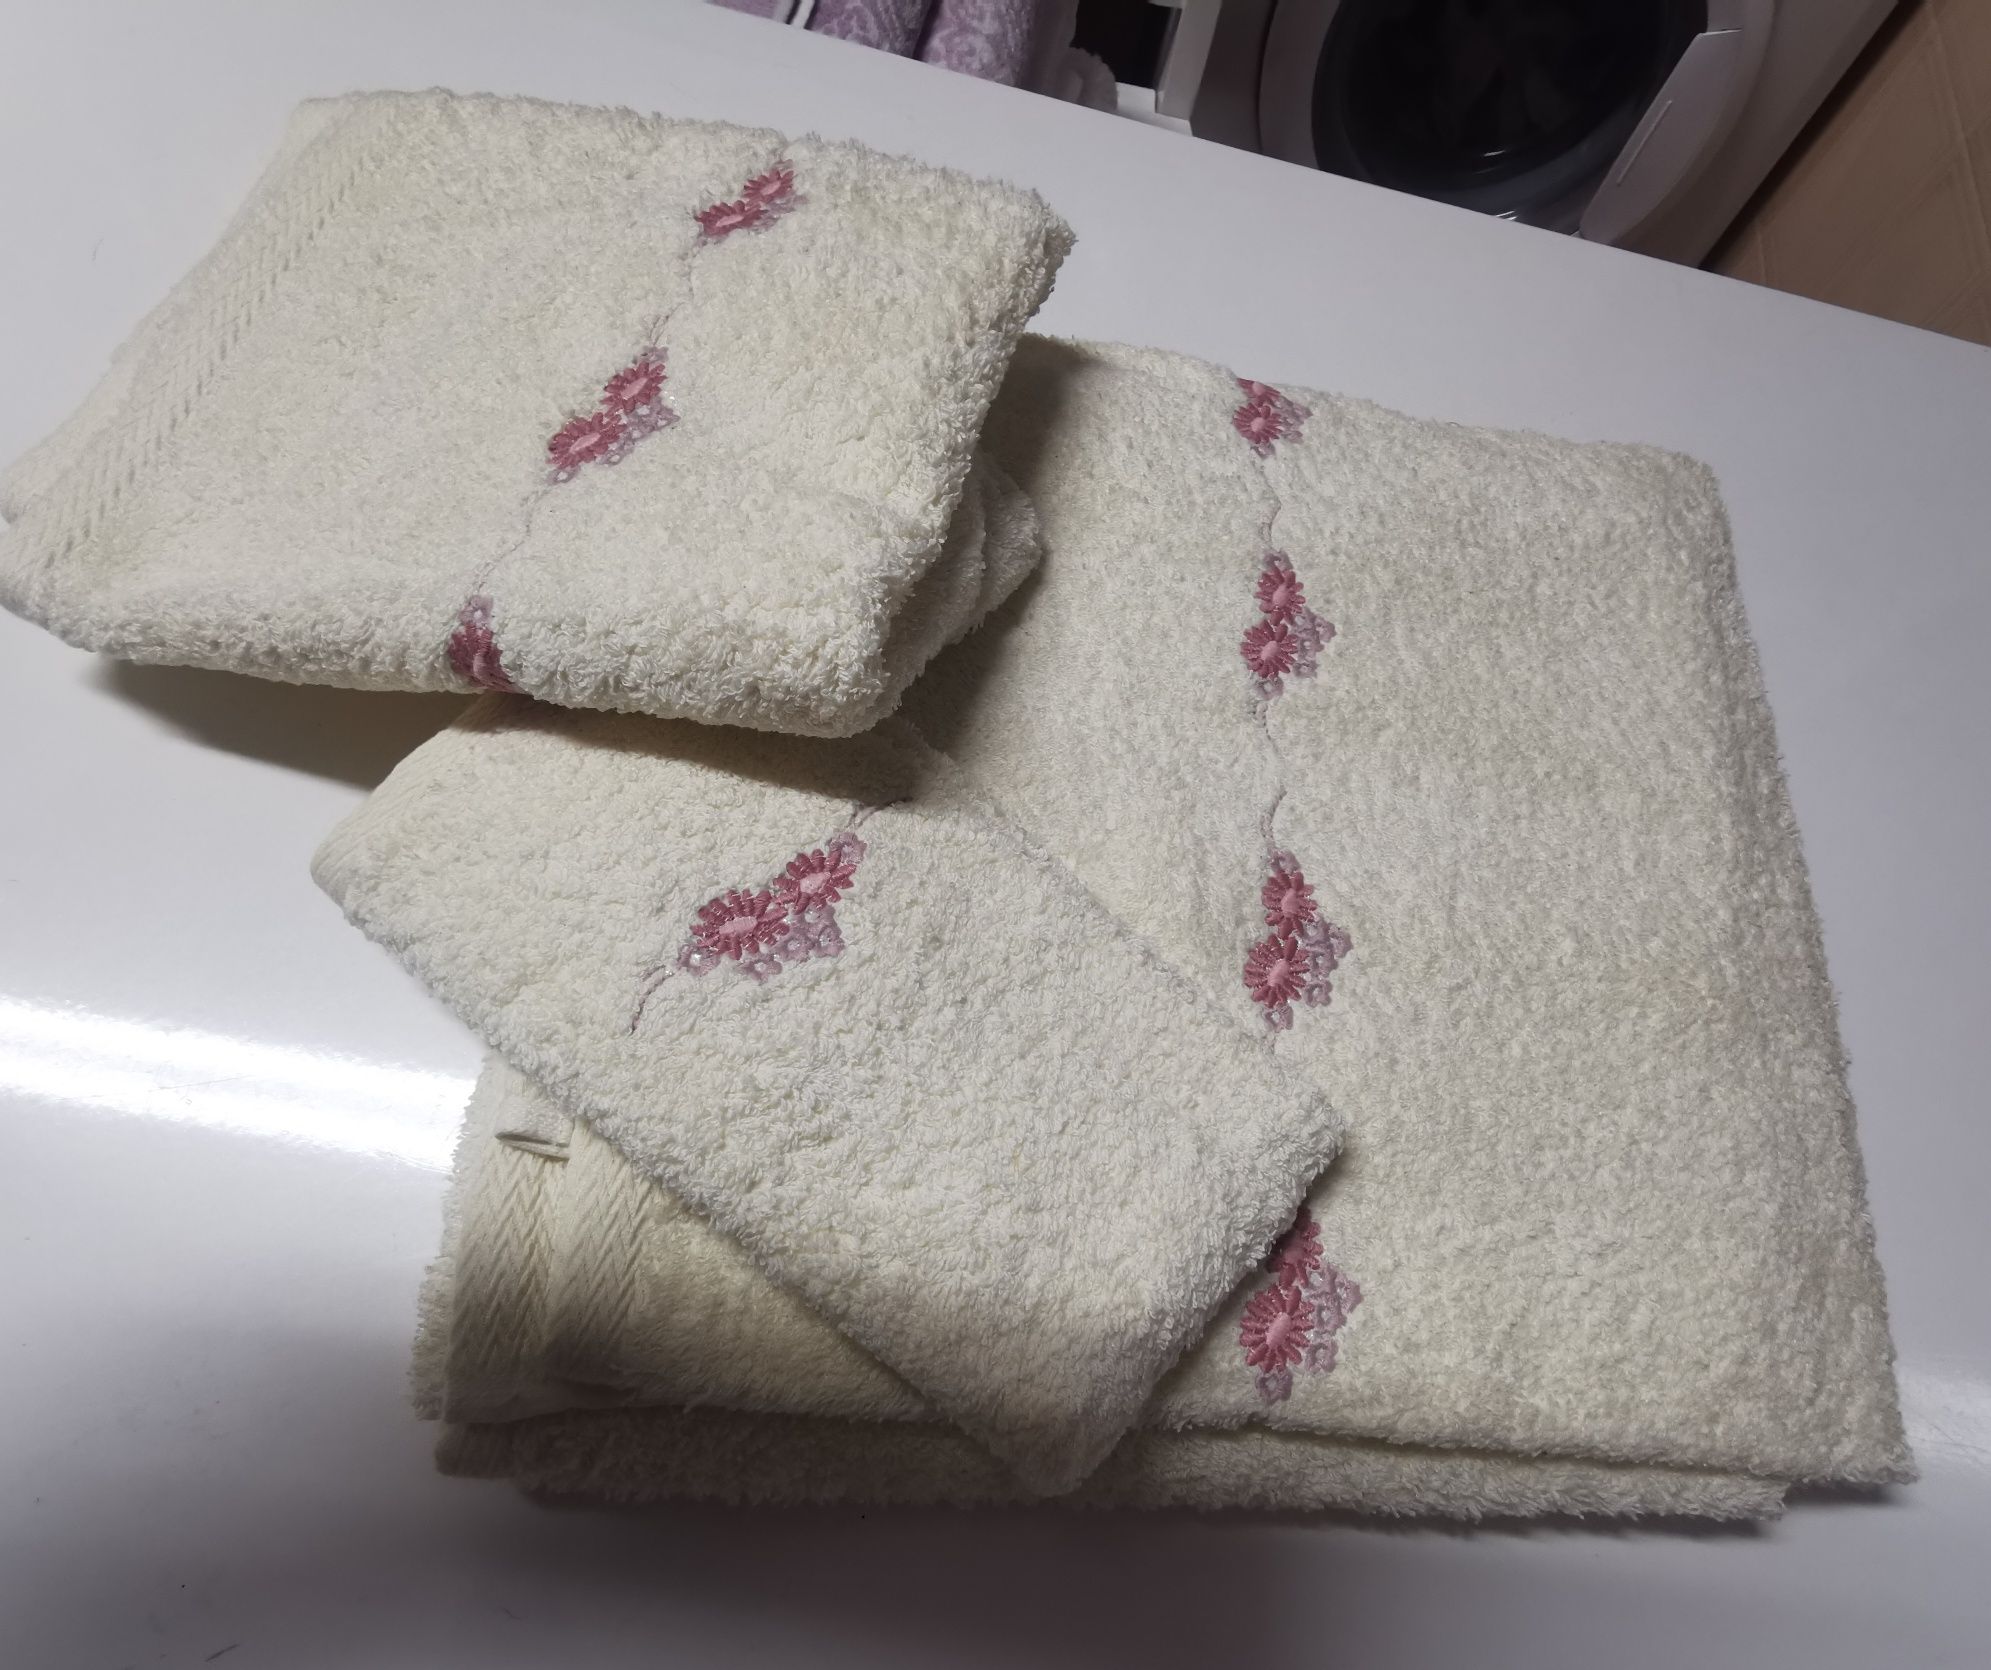 Jogos toalhas 3 peças NOVOS